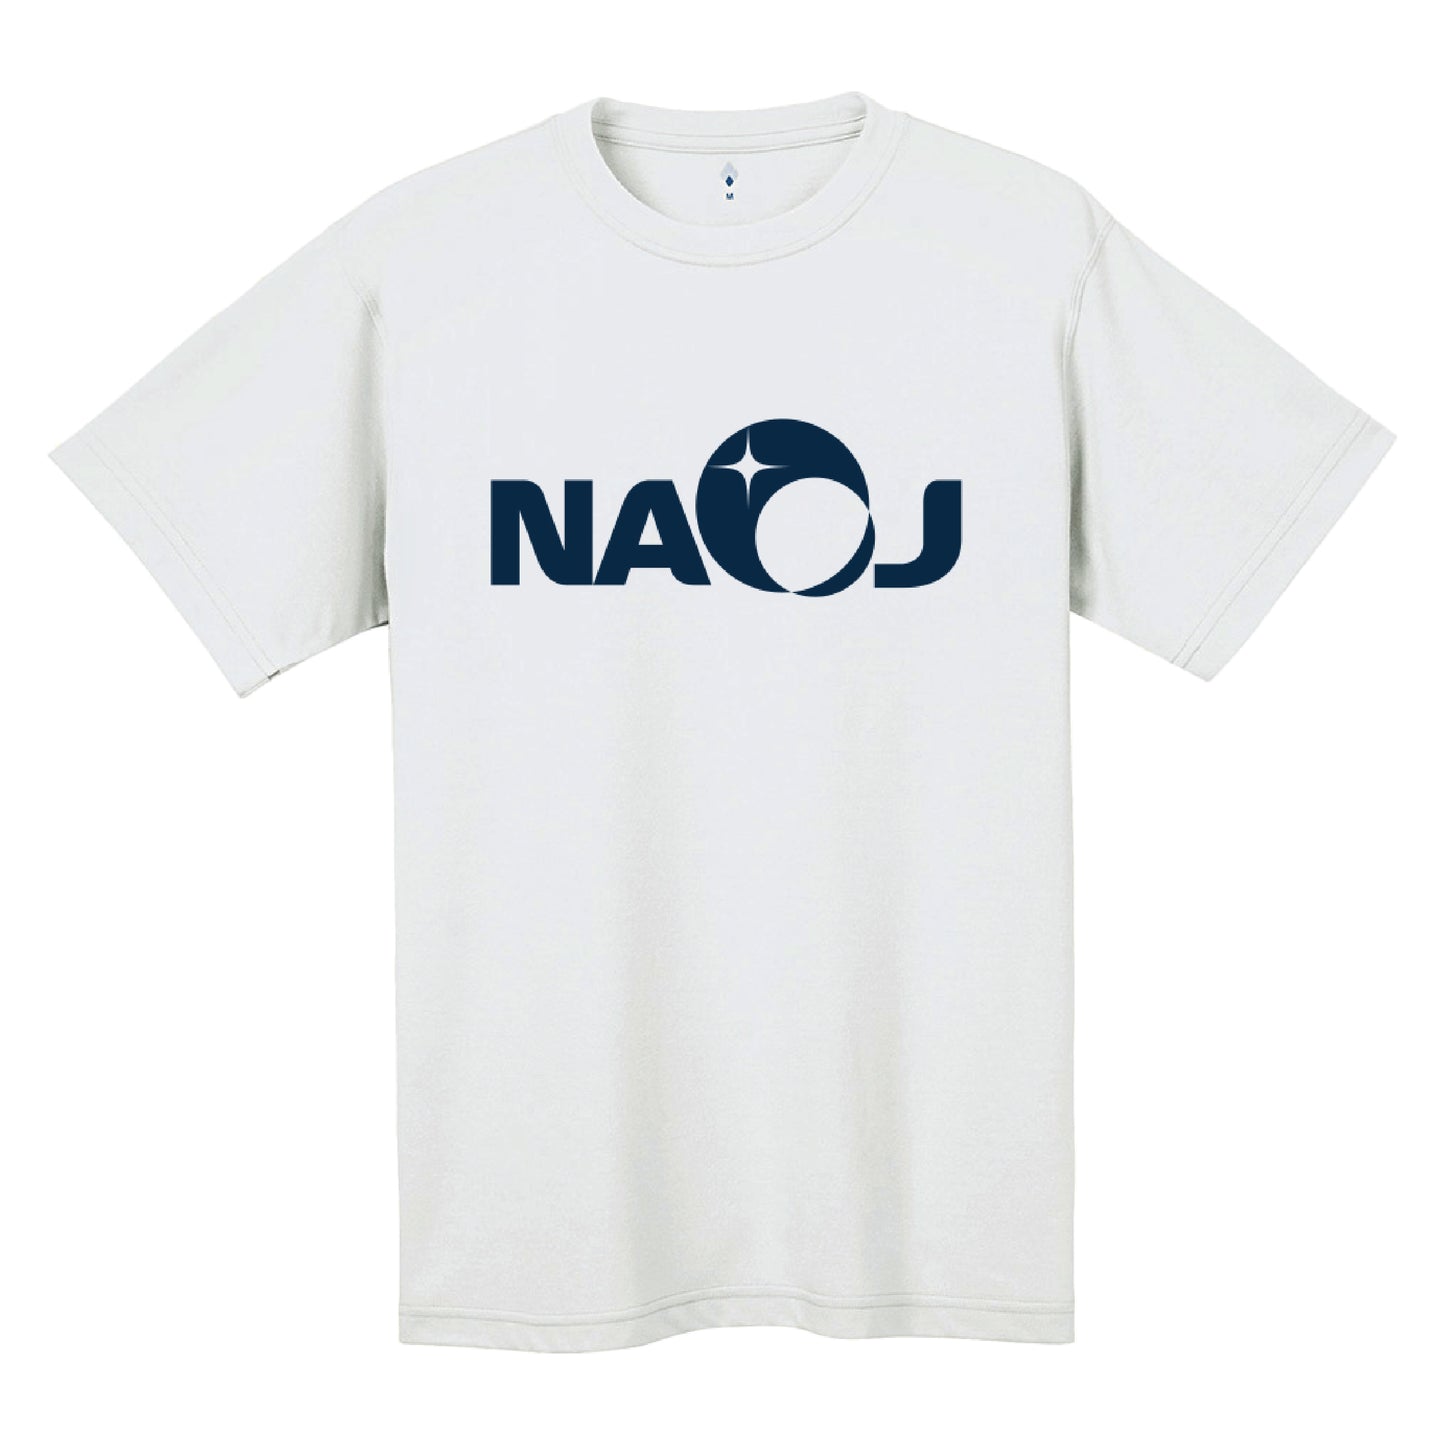 国立天文台 NAOJ ロゴマーク WIC. Tシャツ ホワイト S 00